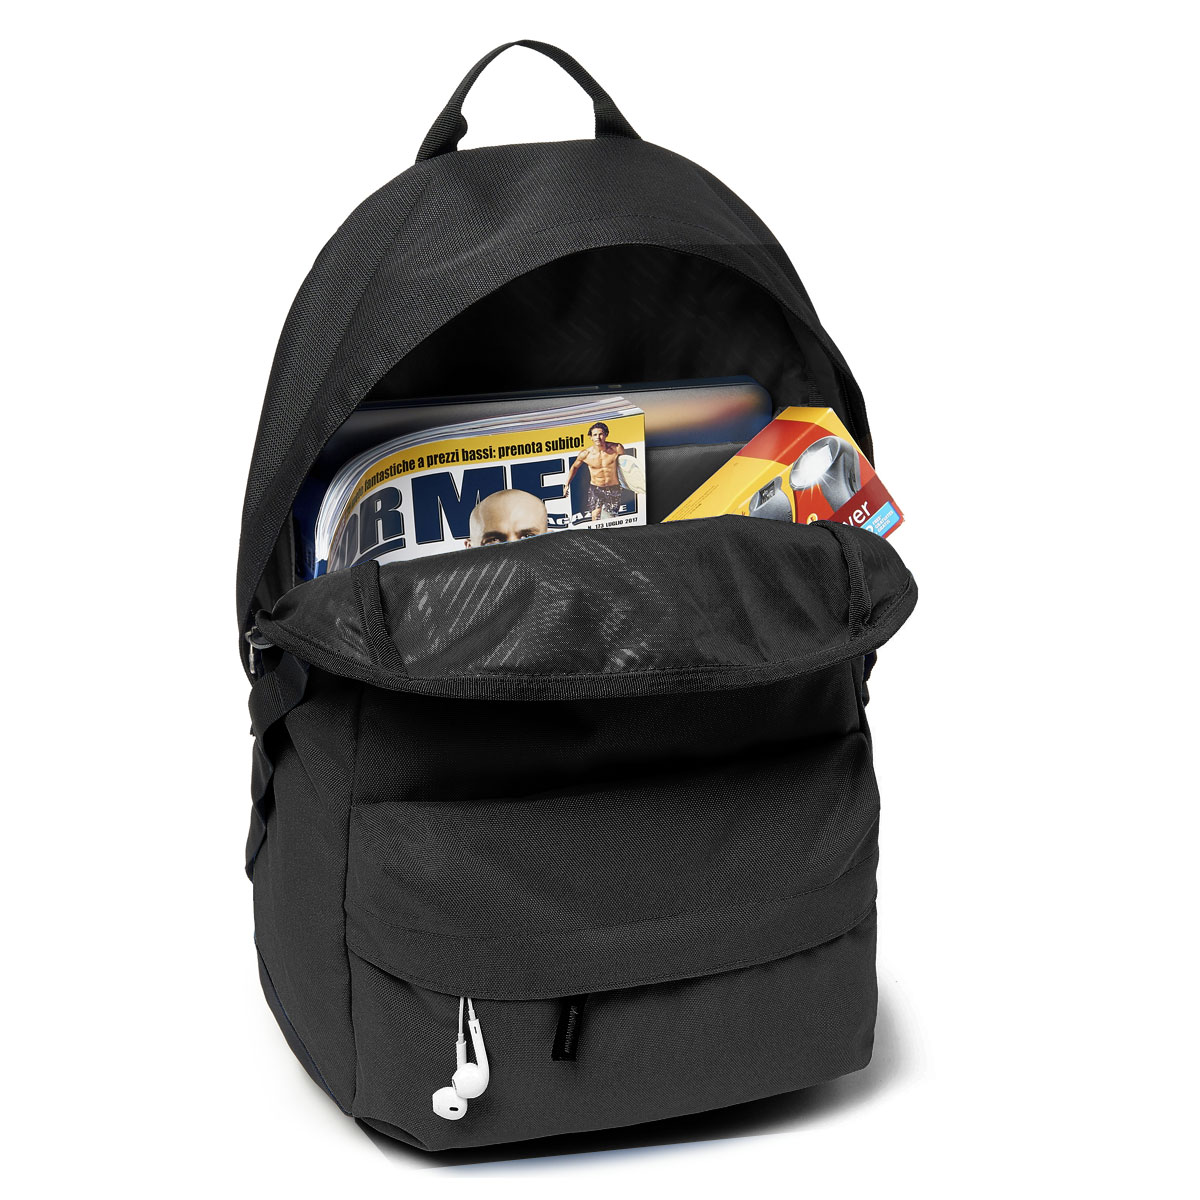 holbrook 20l backpack